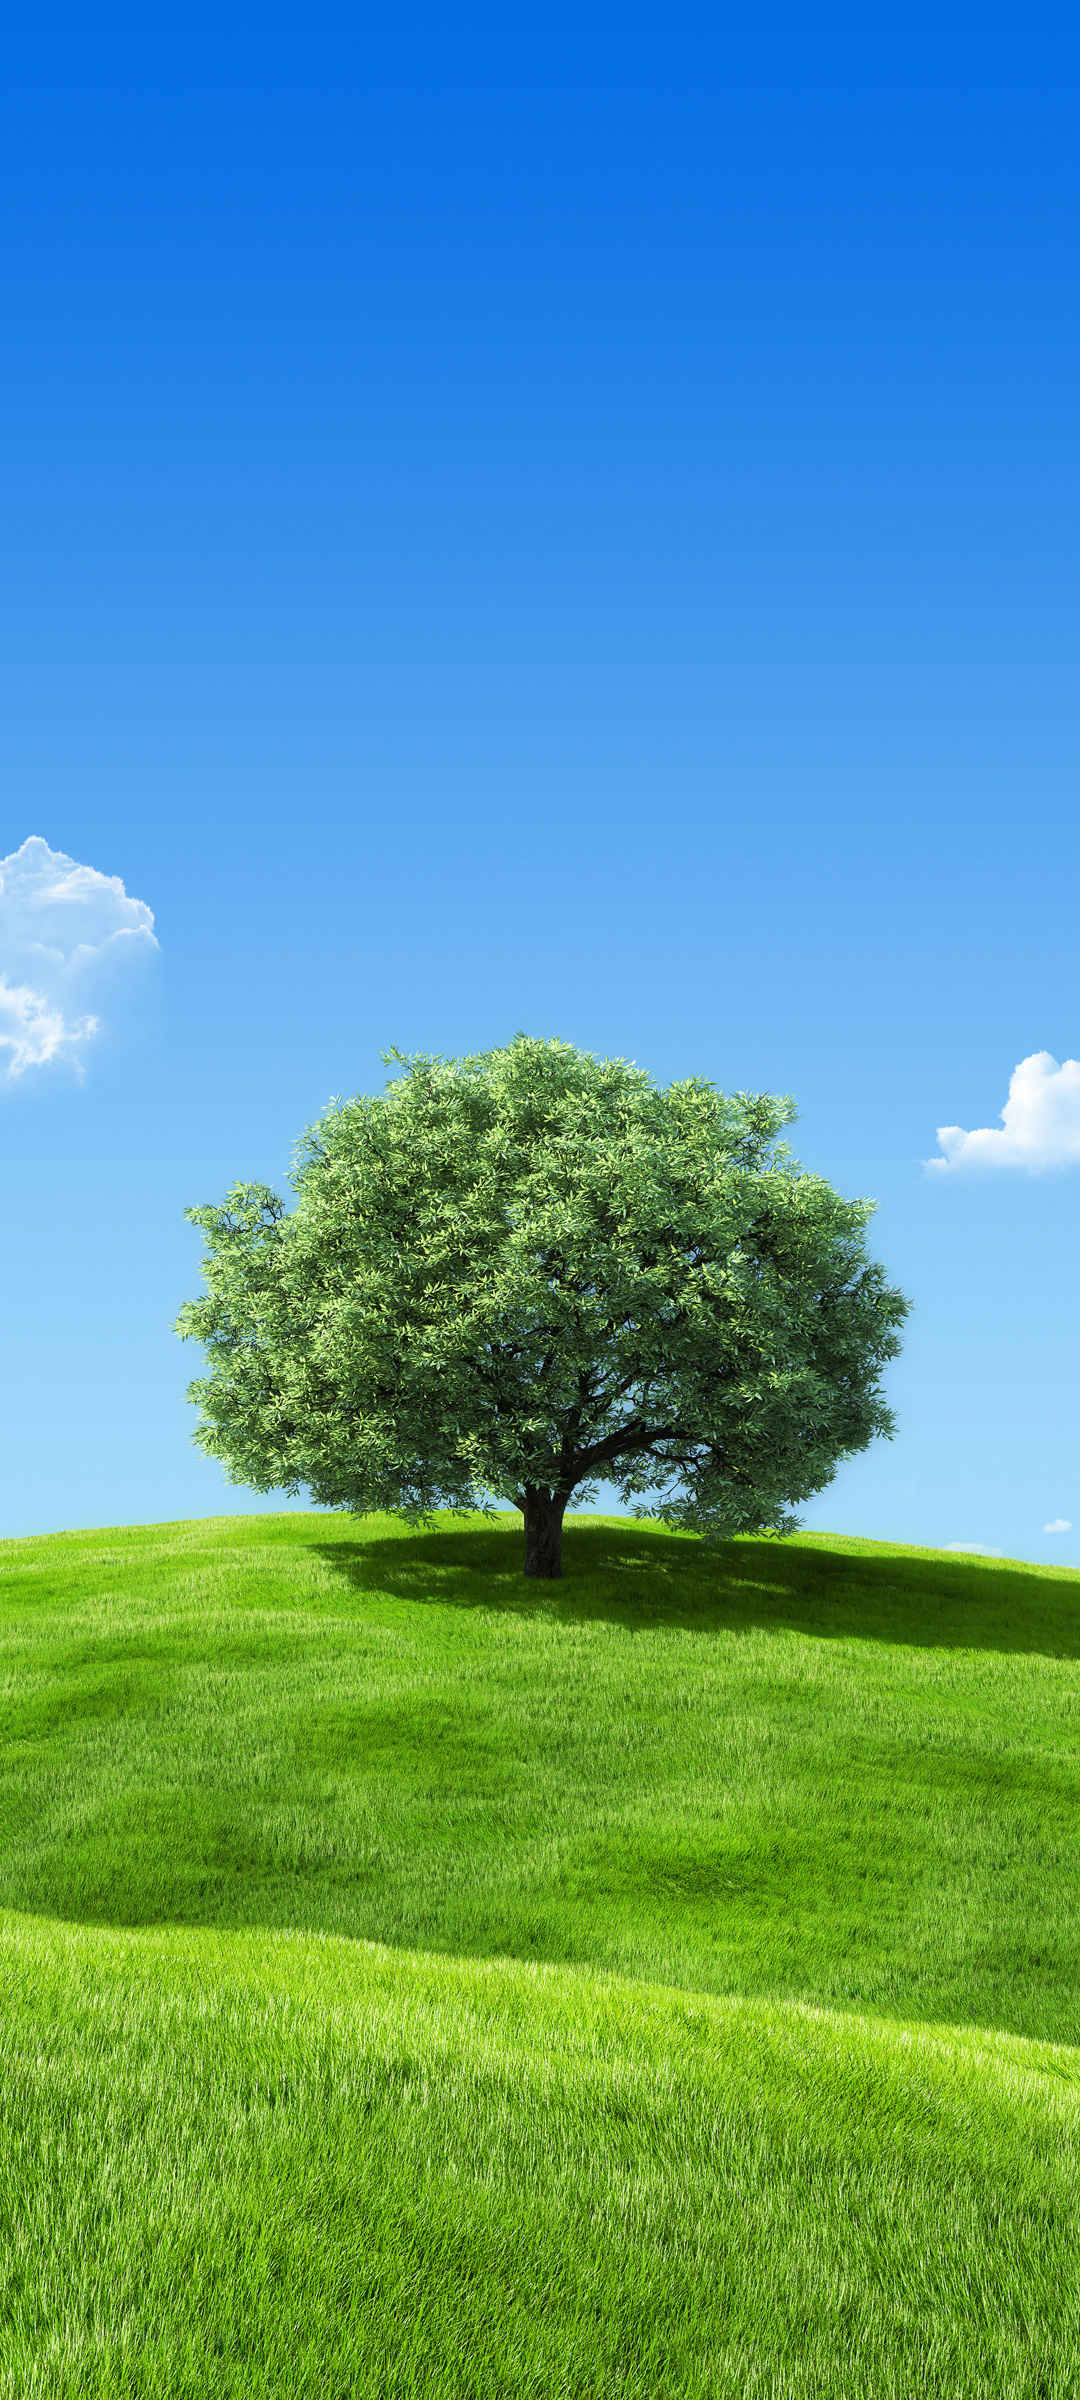 蓝天 白云 绿色草地 一棵大树风景手机壁纸-